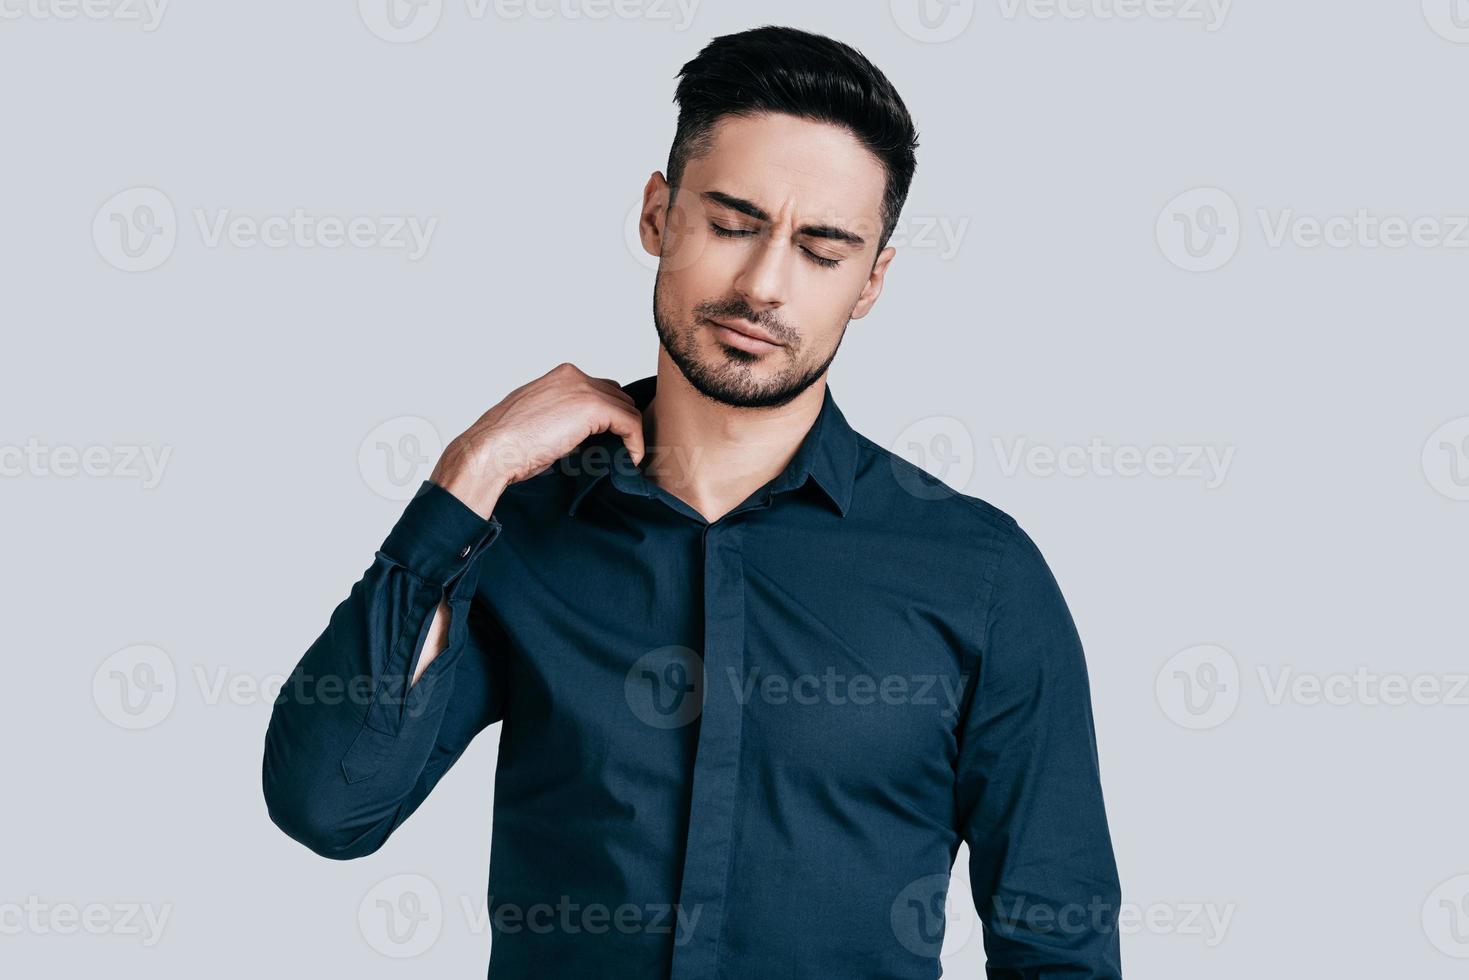 känsla trött. utmattad ung man dragande krage av hans skjorta med stängd ögon medan stående mot grå bakgrund foto